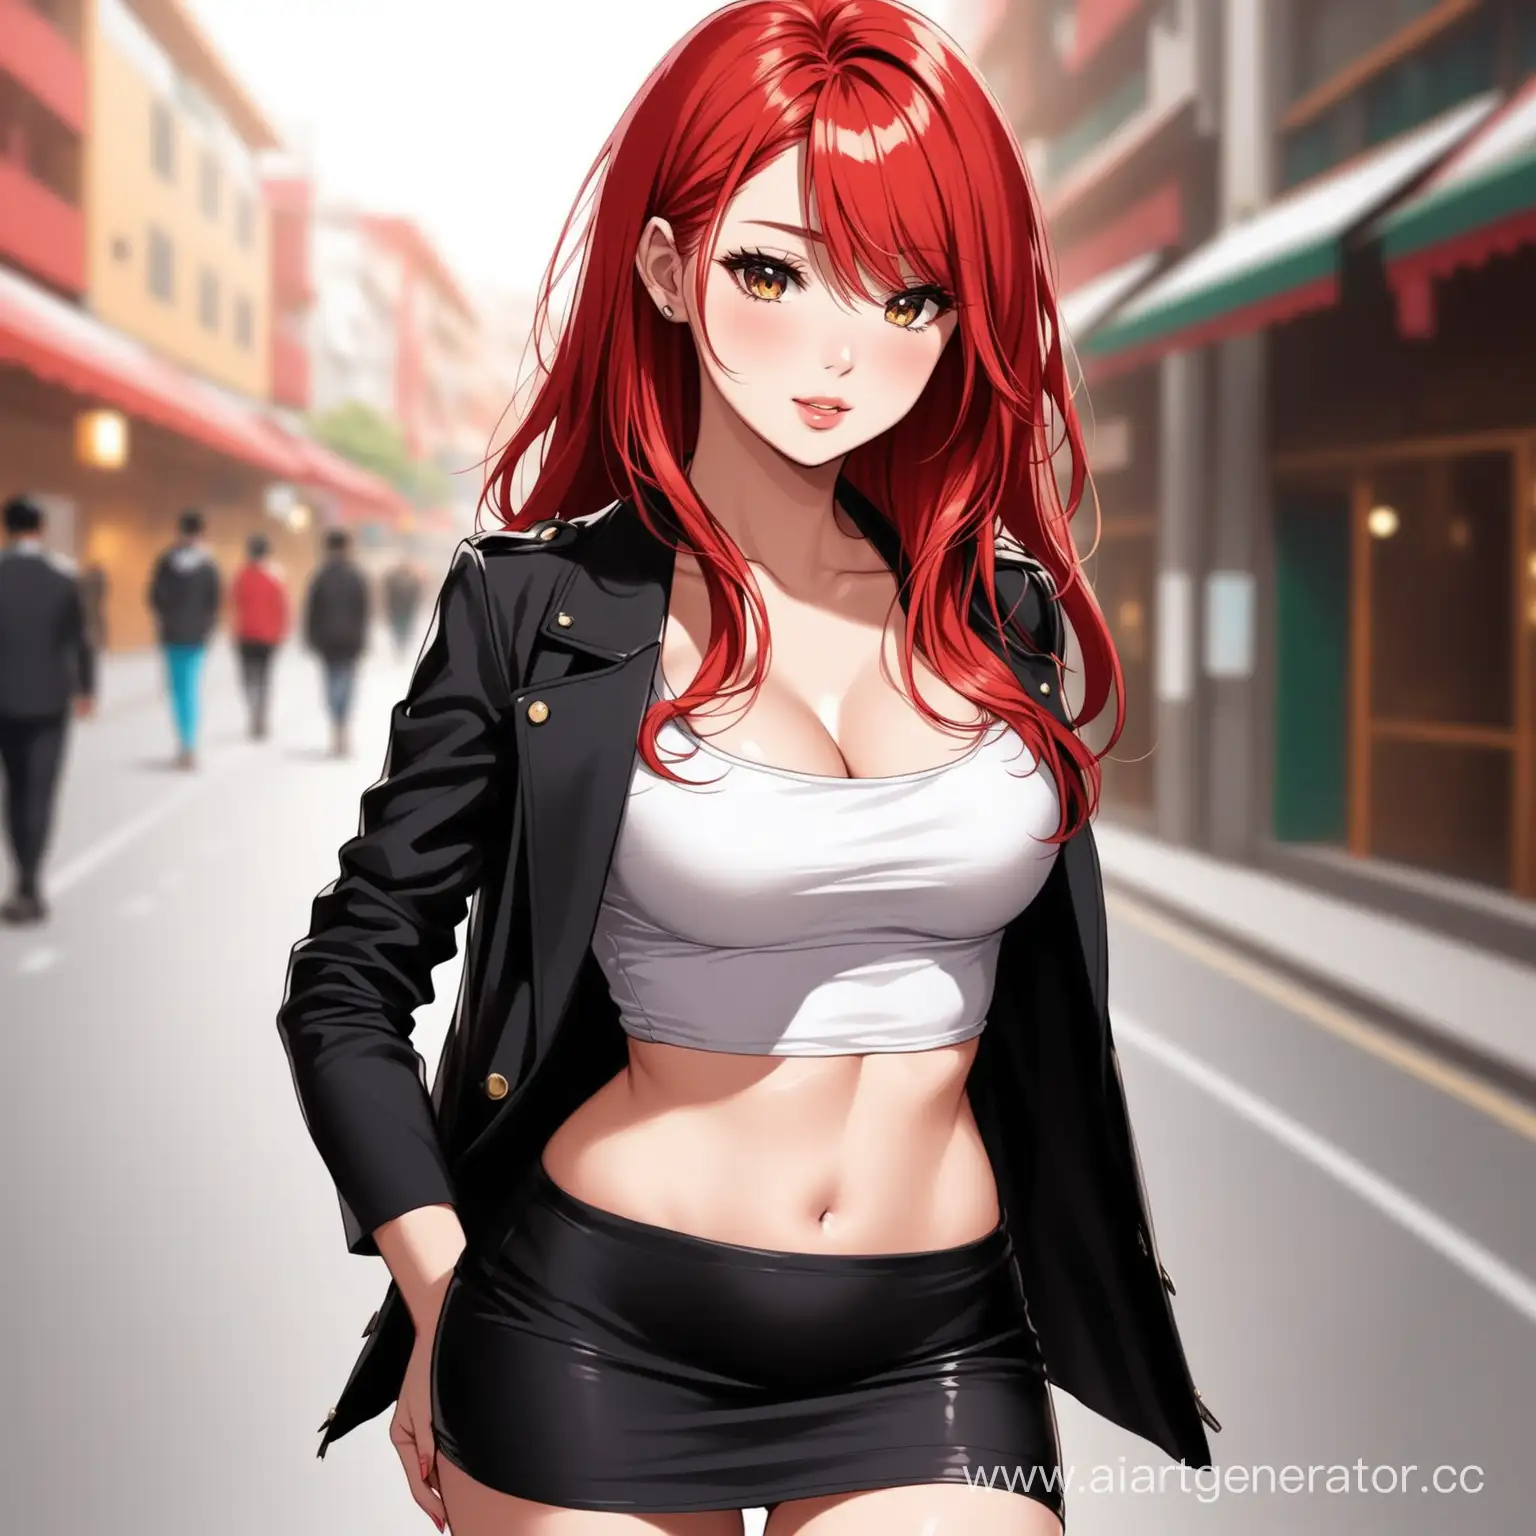 Очень красивая девушка сексуальная  красные волосы в мини юбке